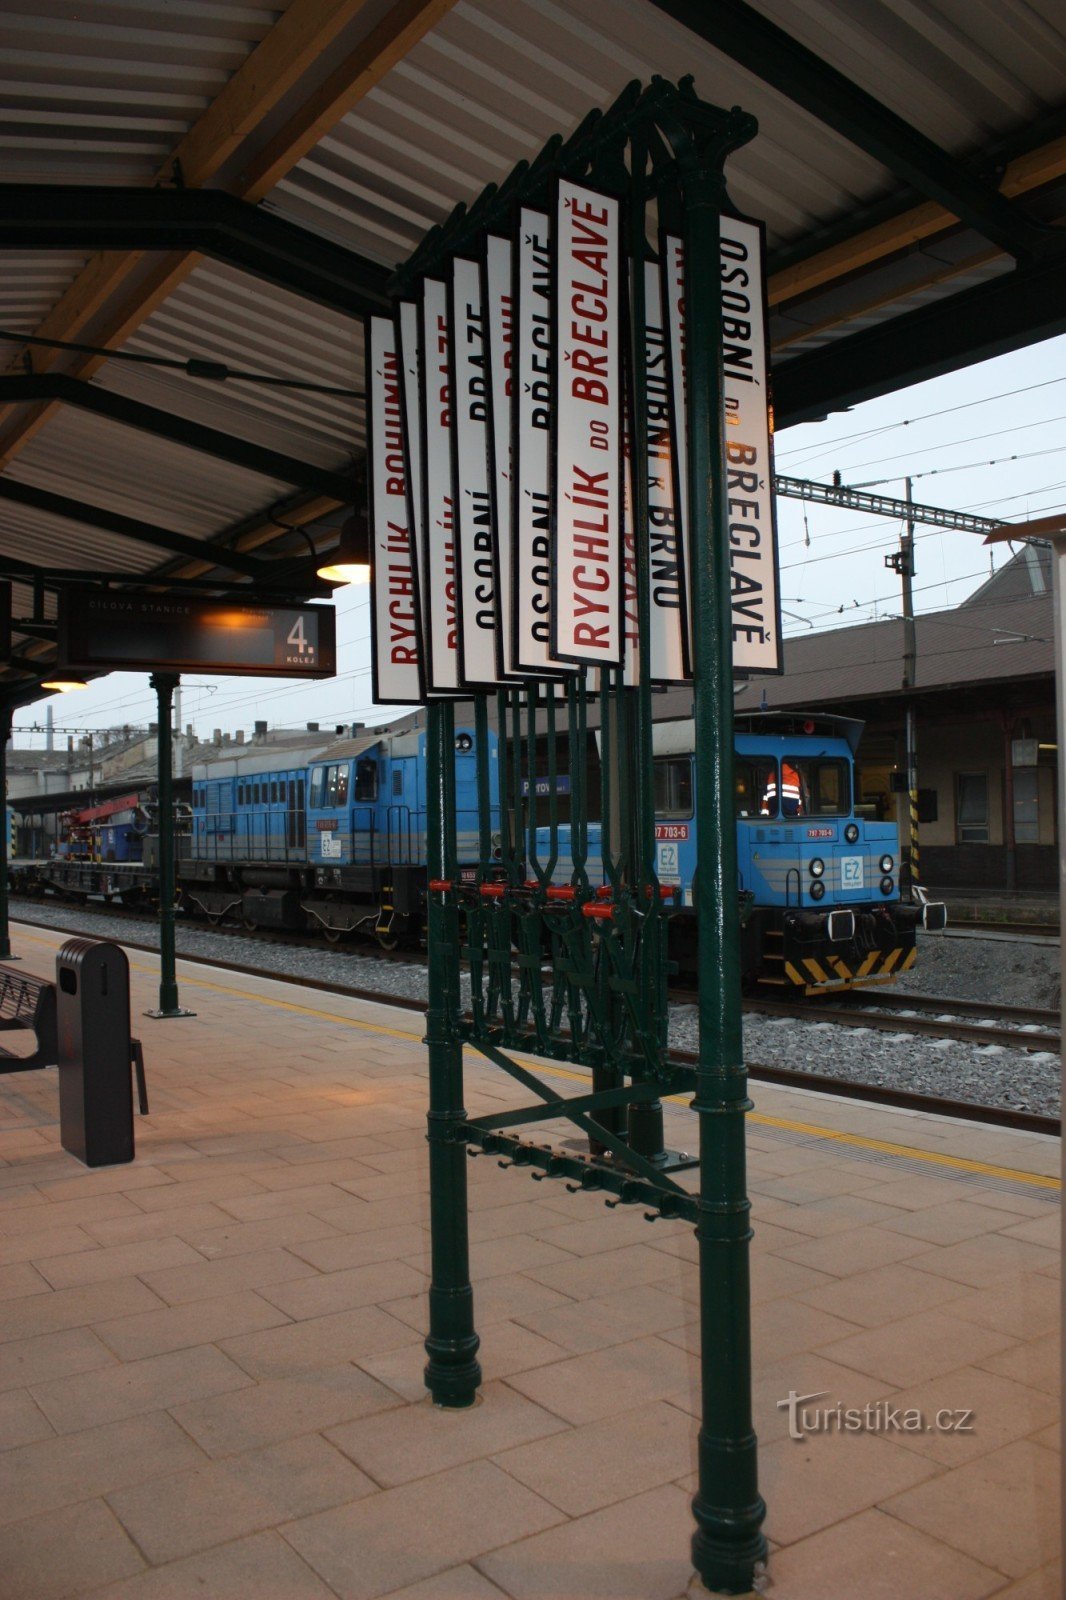 Historische Bahnsteigtafel am zweiten Bahnsteig des Bahnhofs